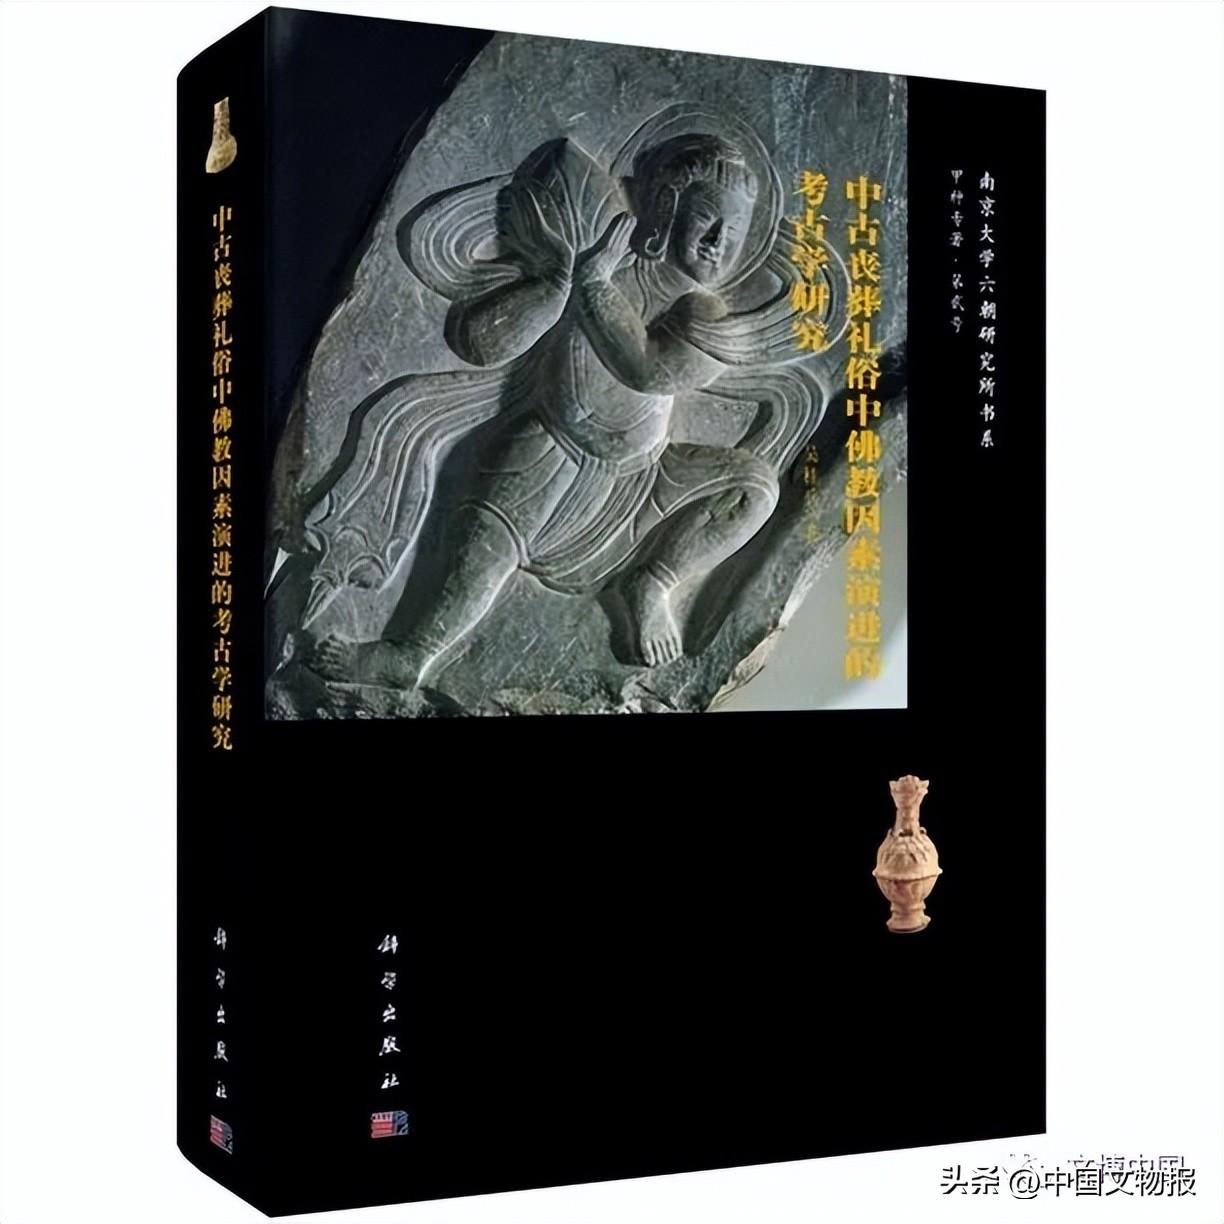 荐书 | 中国古代墓葬中佛教因素发展的文化审视——《中古丧葬礼俗中佛教因素演进的考古学研究》评介